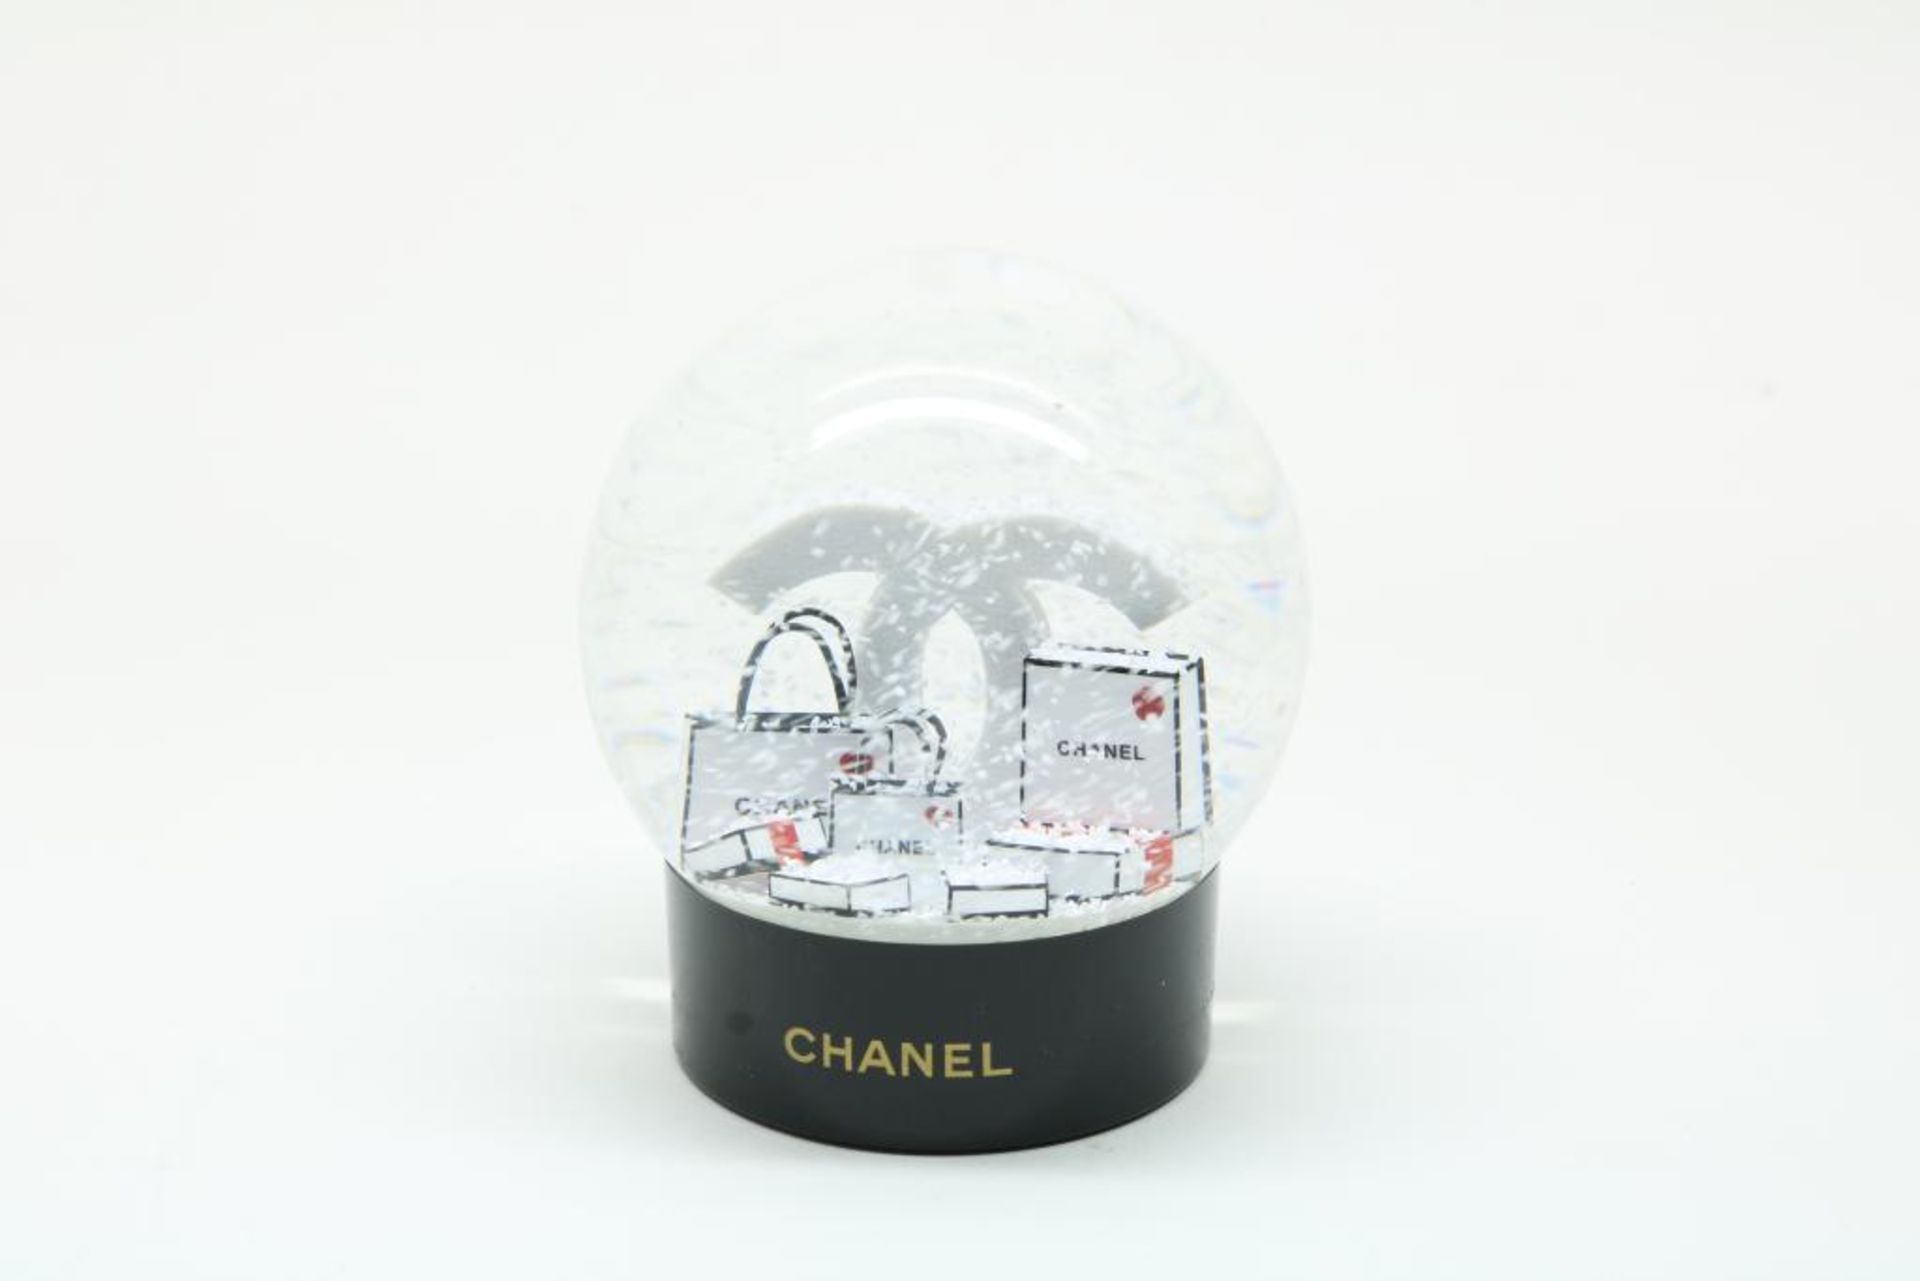 Chanel sneeuwbol